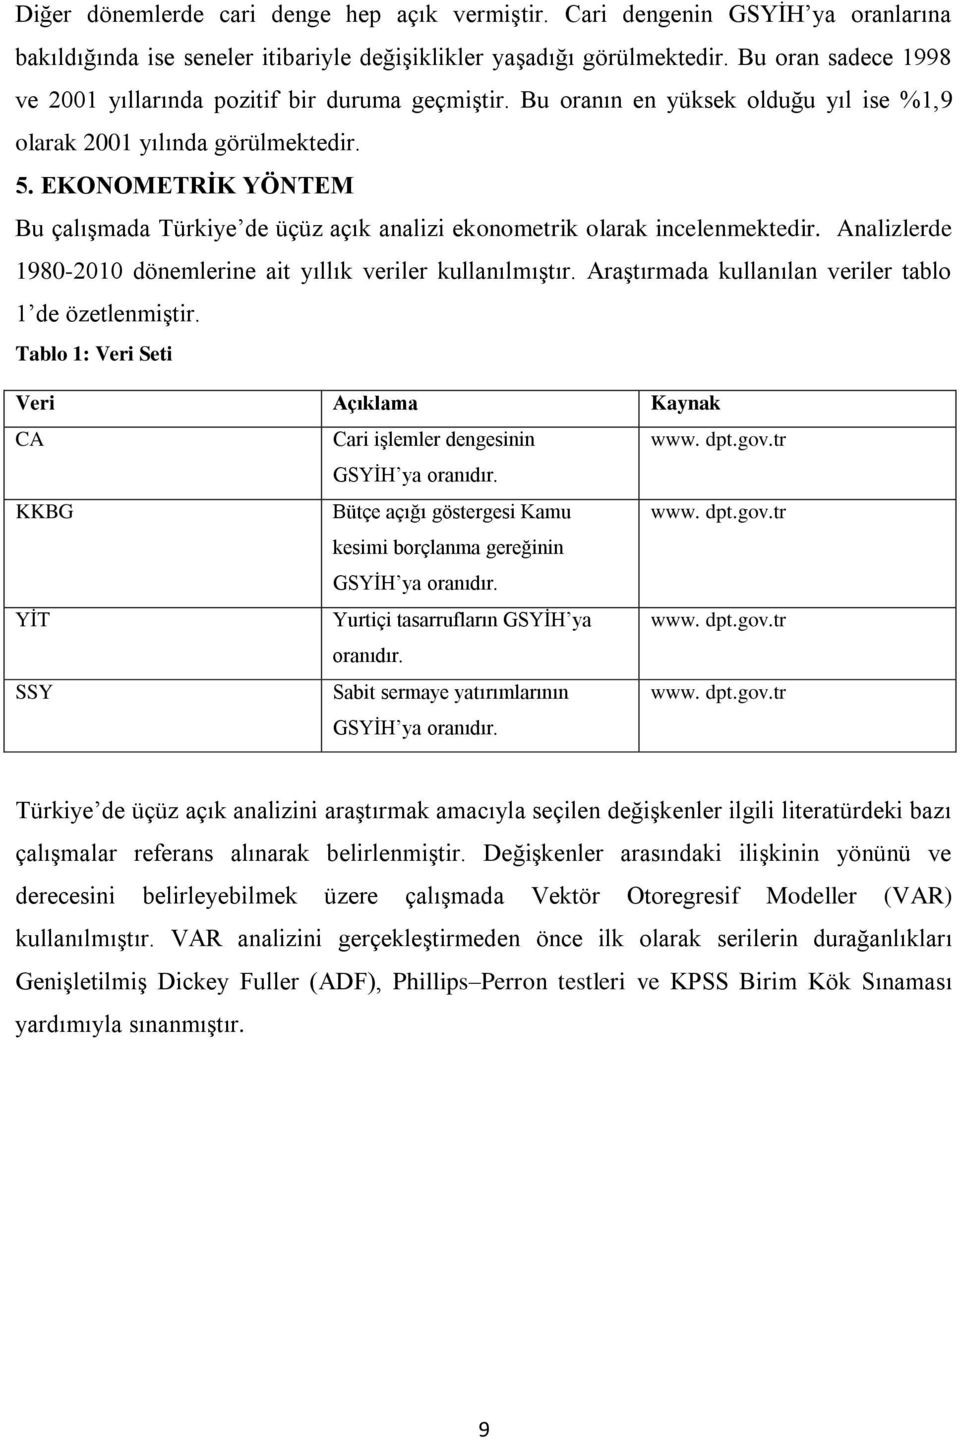 EKONOMETRİK YÖNTEM Bu çalışmada Türkiye de üçüz açık analizi ekonometrik olarak incelenmektedir. Analizlerde 1980-2010 dönemlerine ait yıllık veriler kullanılmıştır.